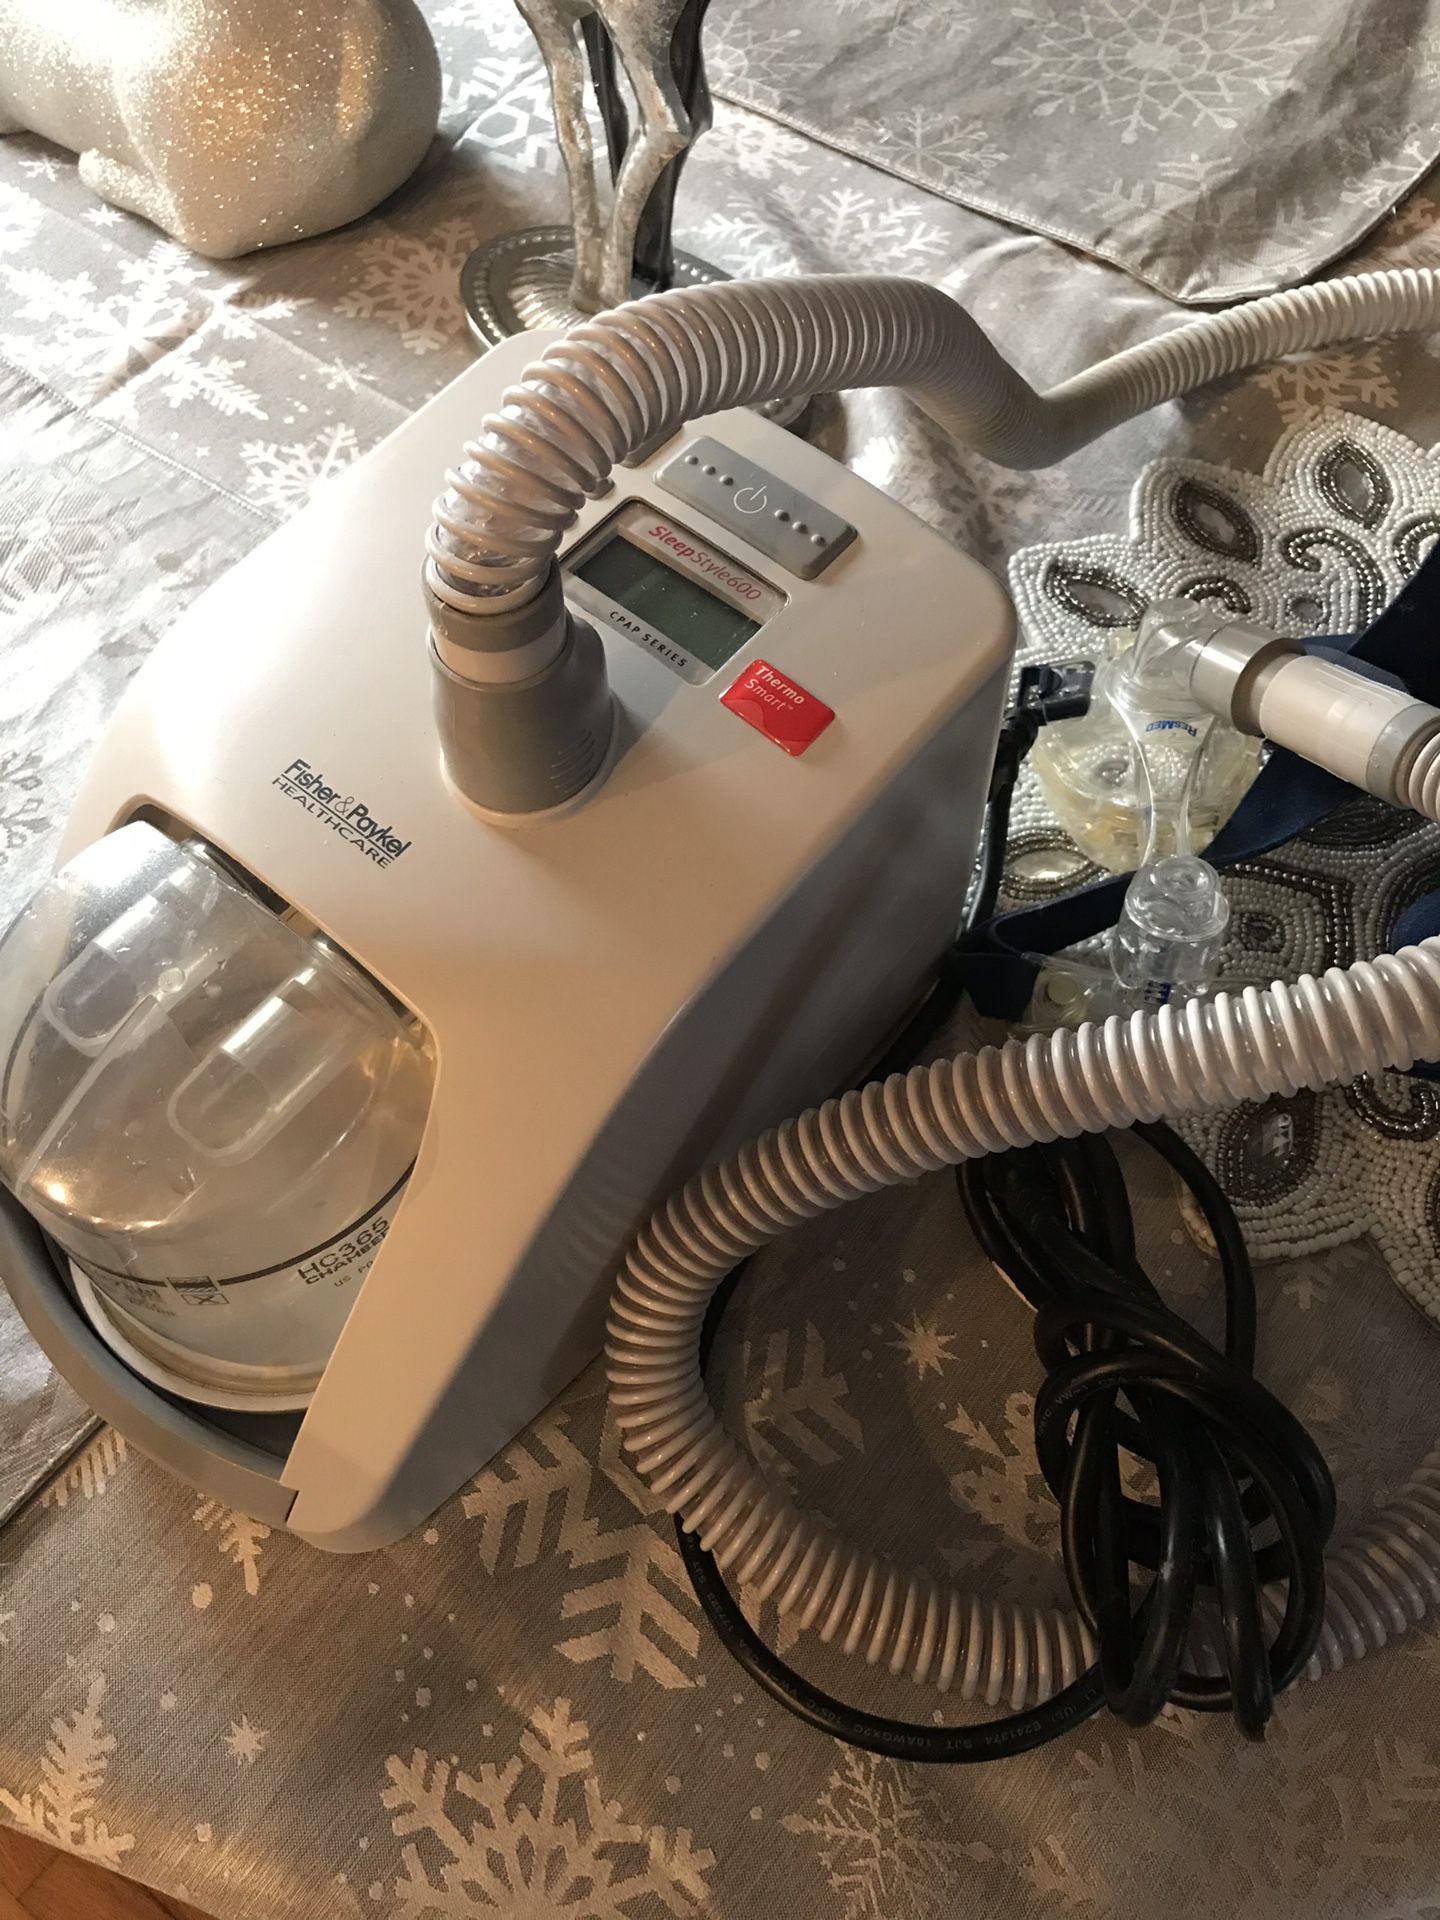 CPAP breathing machine